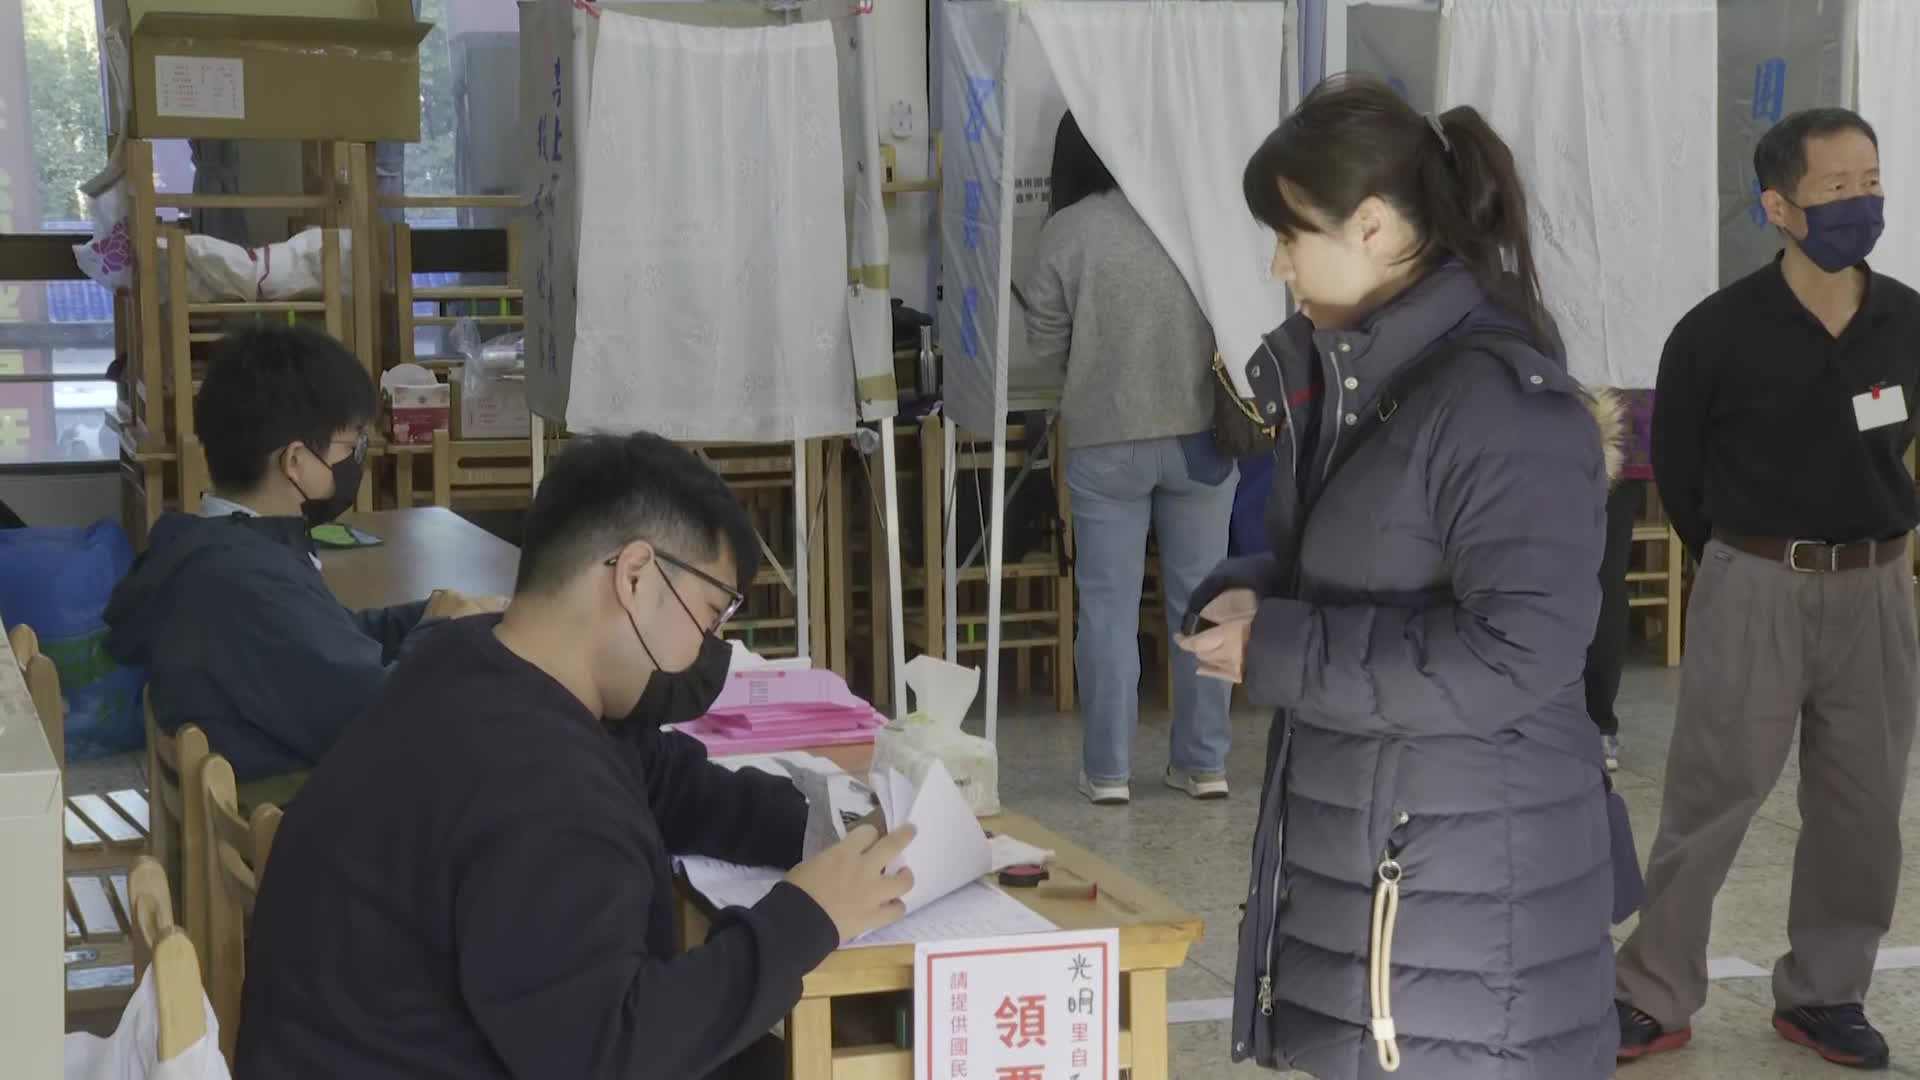 지난 13일 타이완 총통선거 투표에 참여하는 타이베이 시민들의 모습